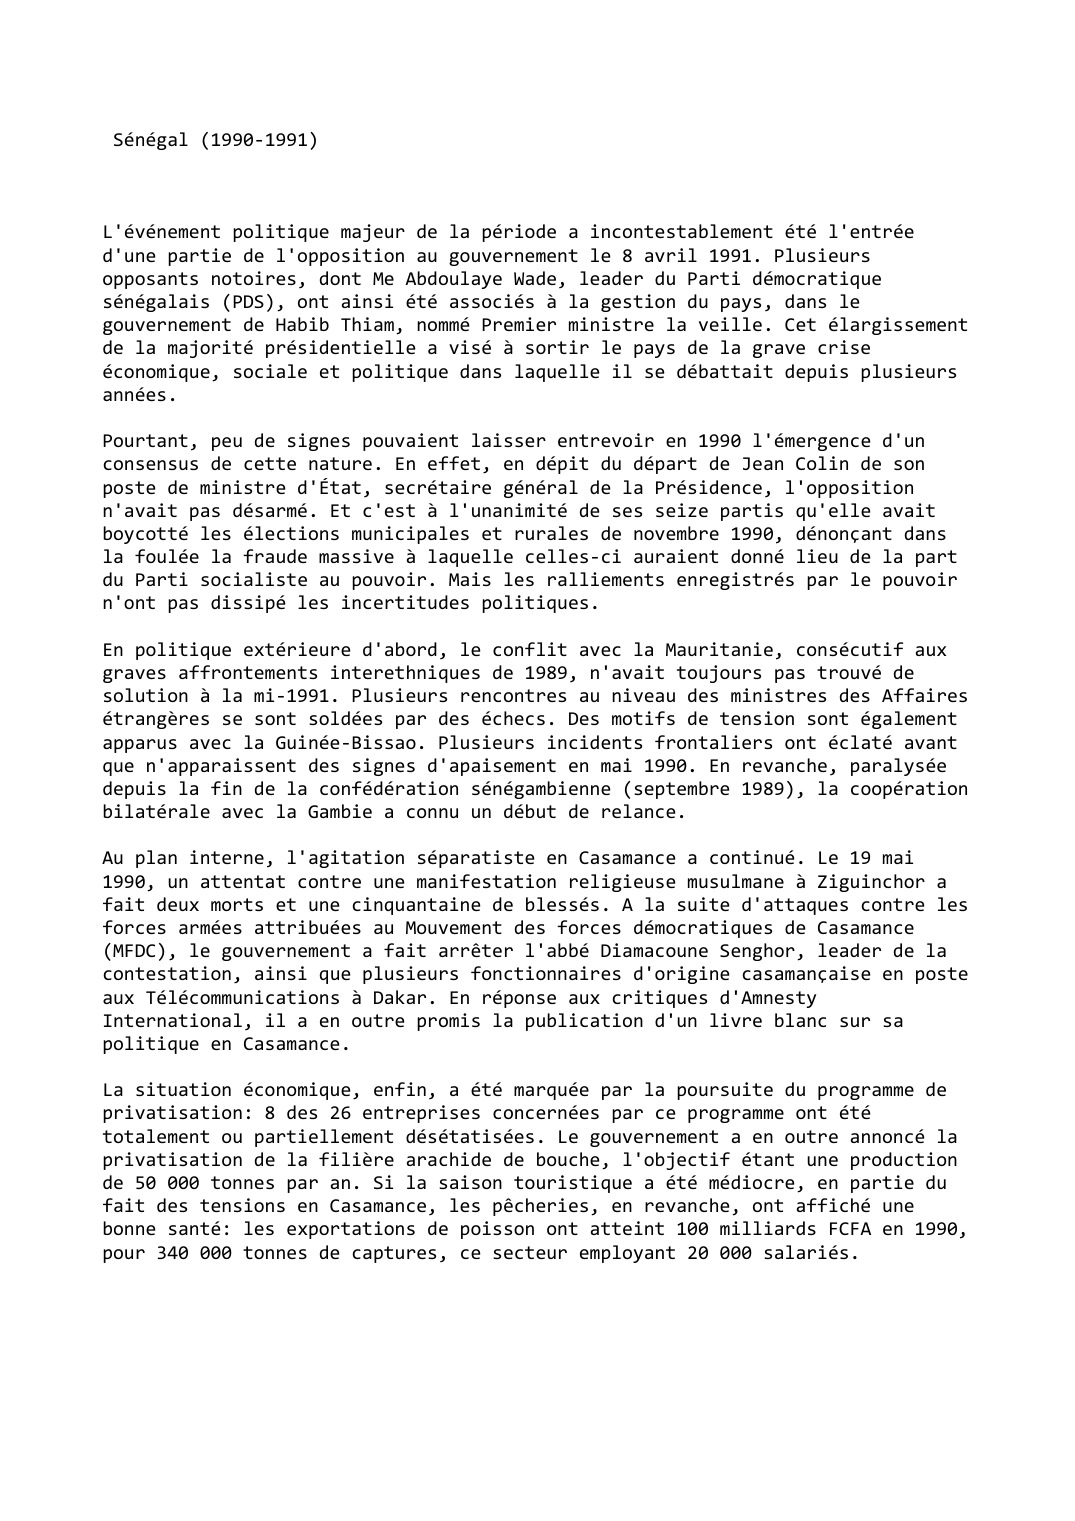 Prévisualisation du document Sénégal (1990-1991)